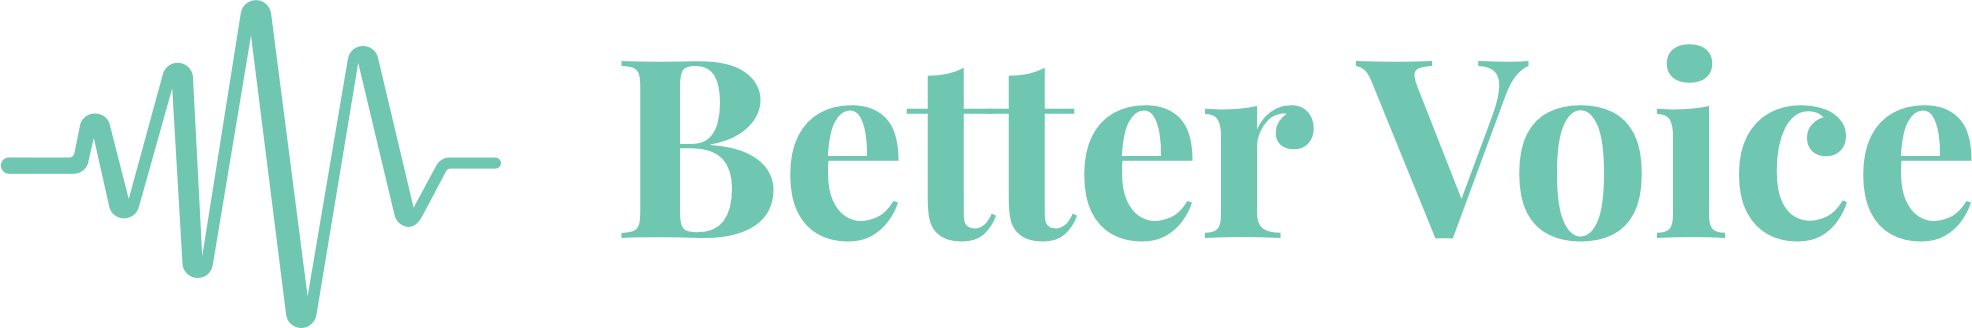 Better Voice for teachers logo